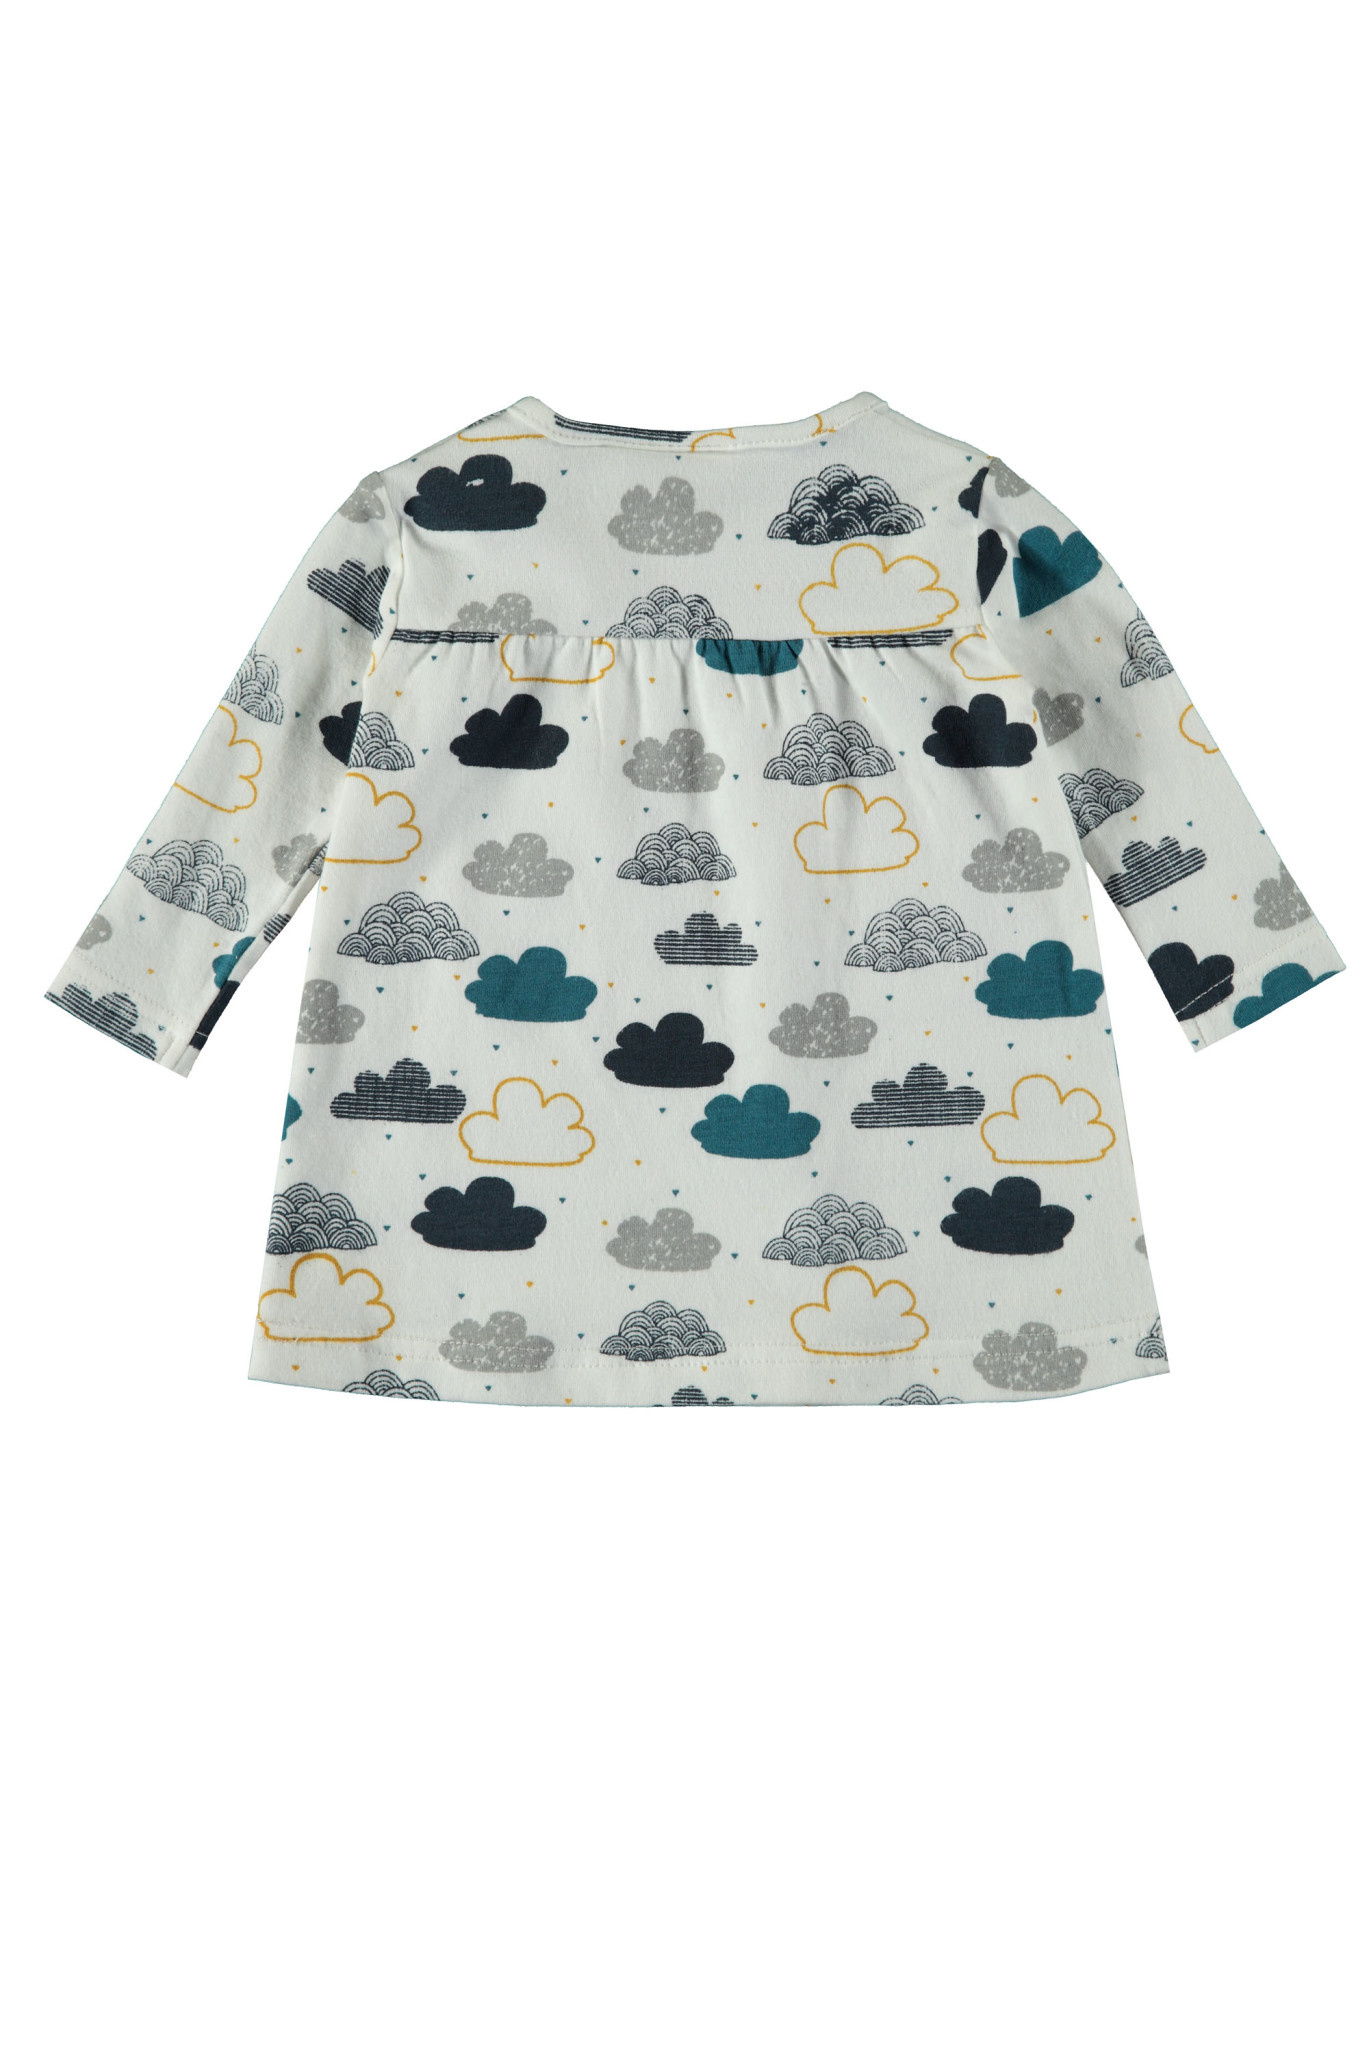 Afbeelding van Bampidano Newborn meisjes jurk anna clouds allover